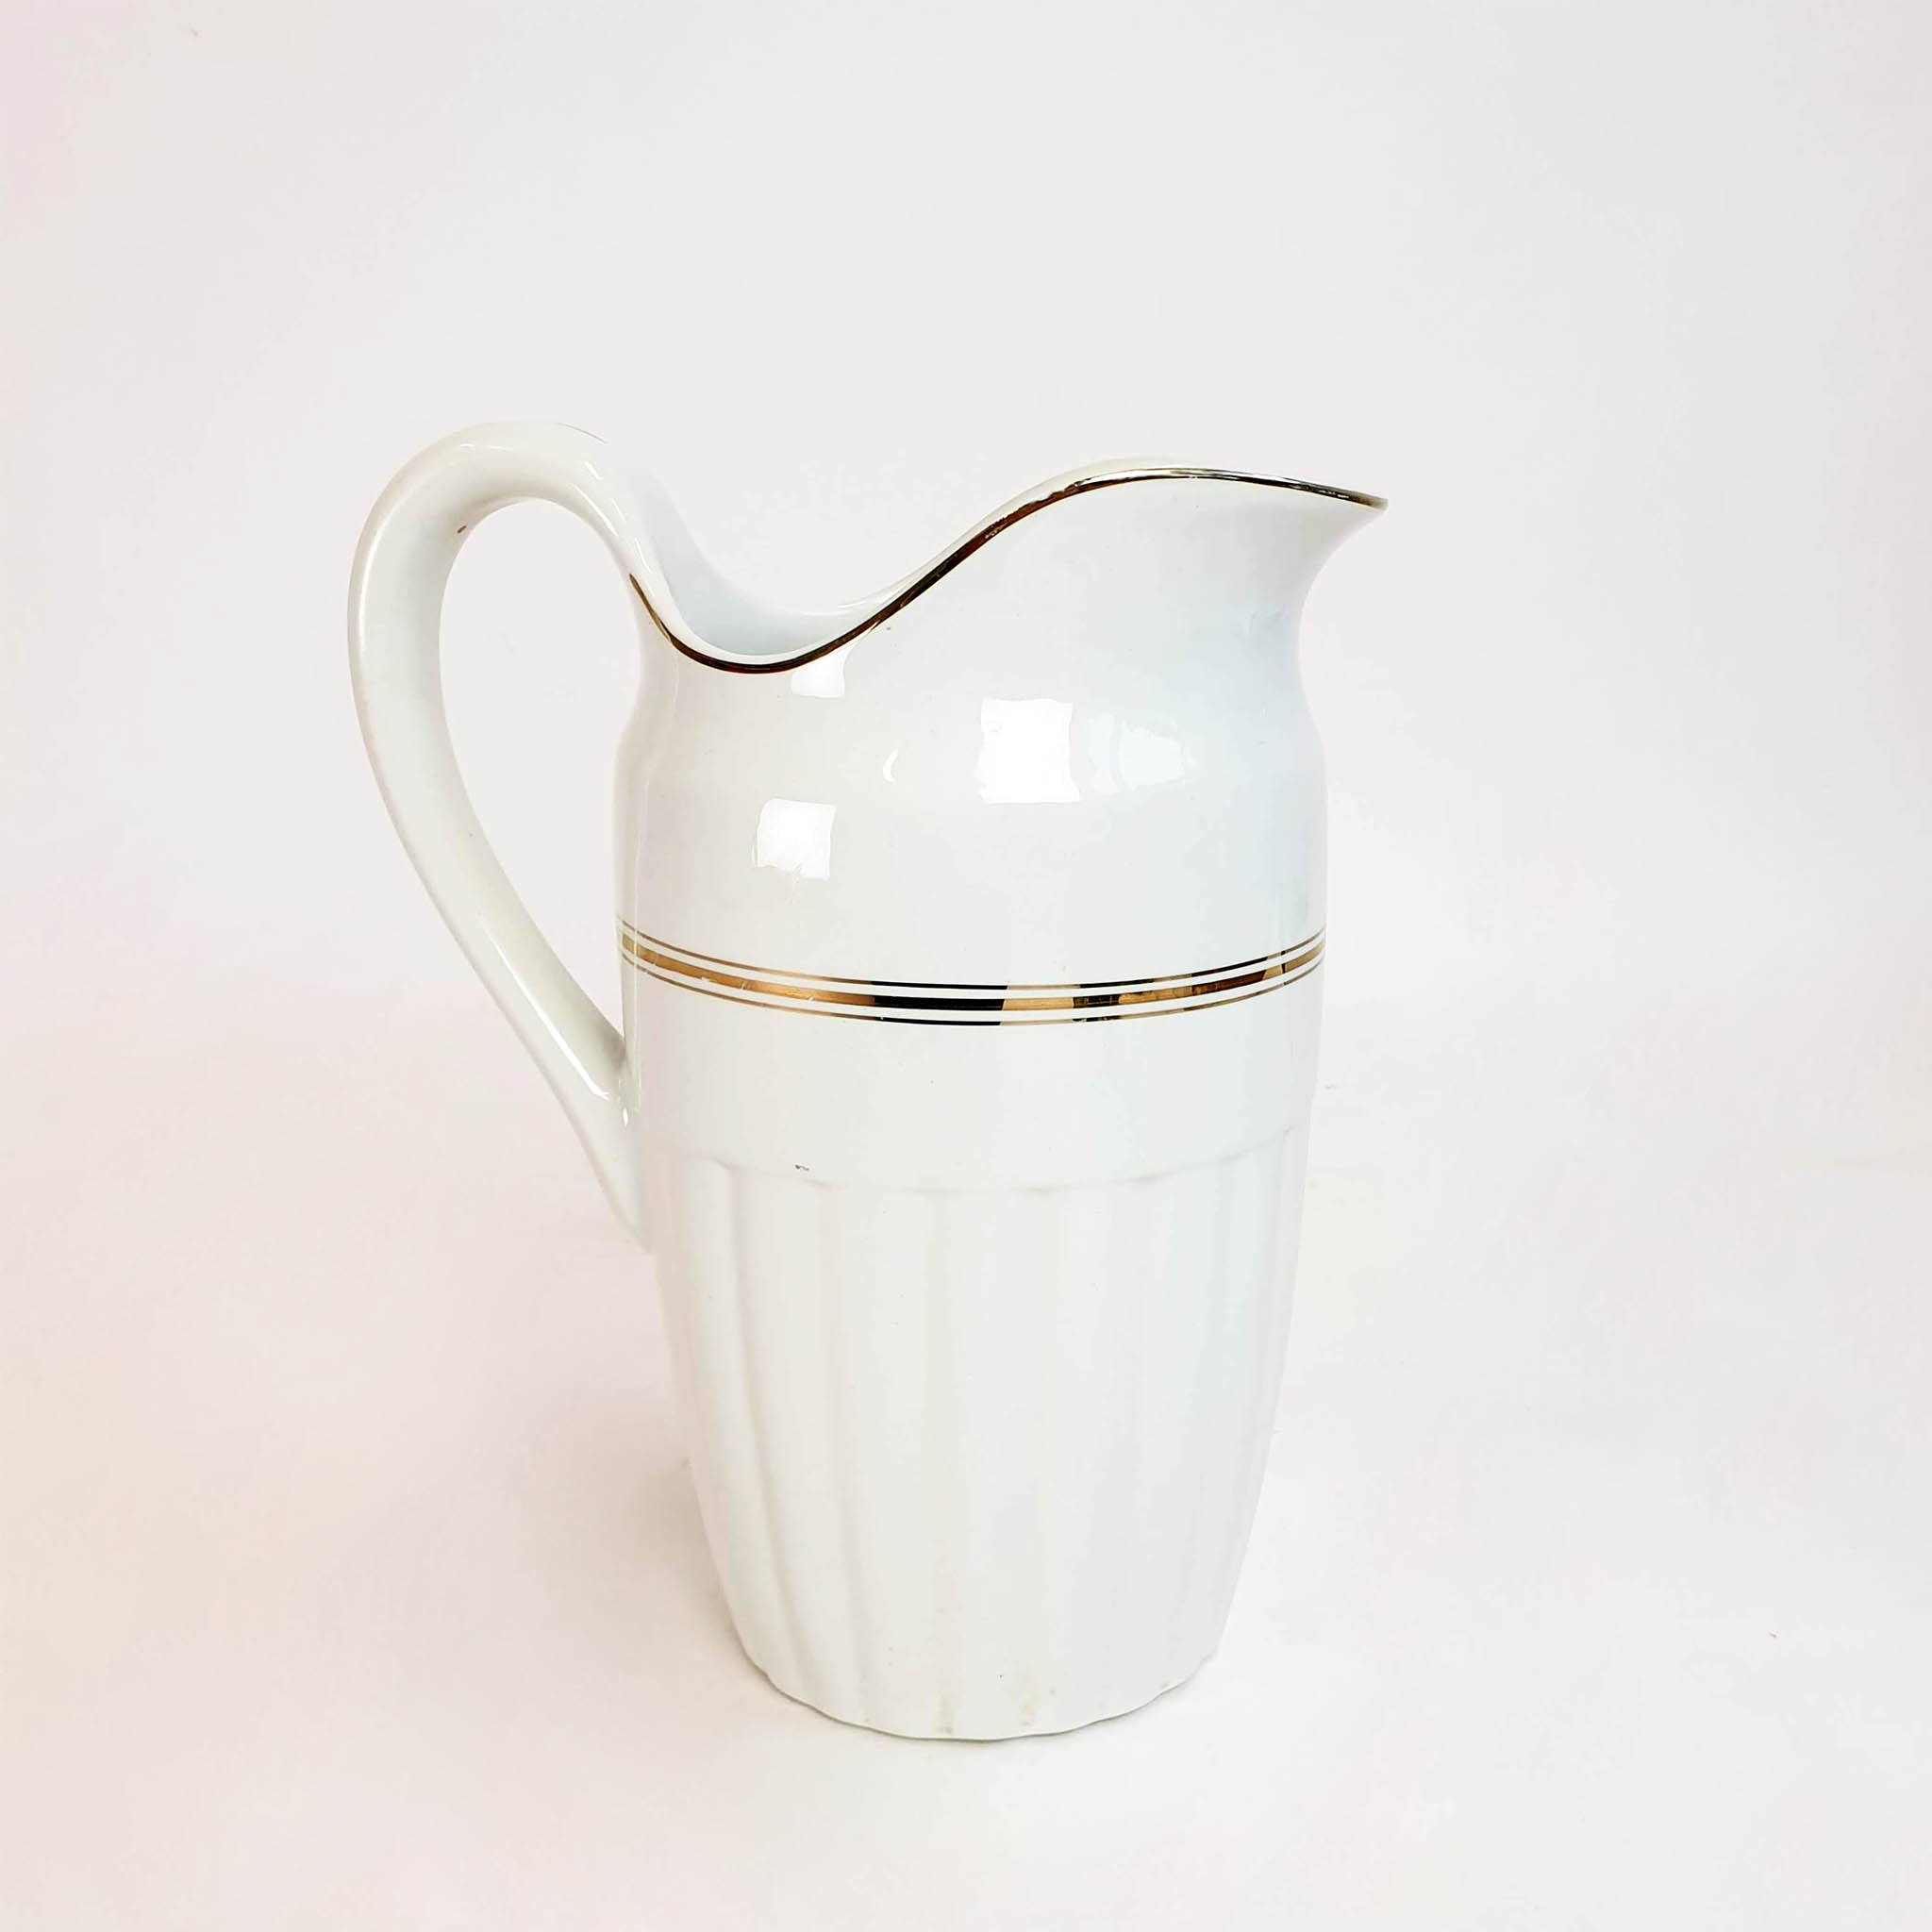 Large mid-century Italian porcelain jug